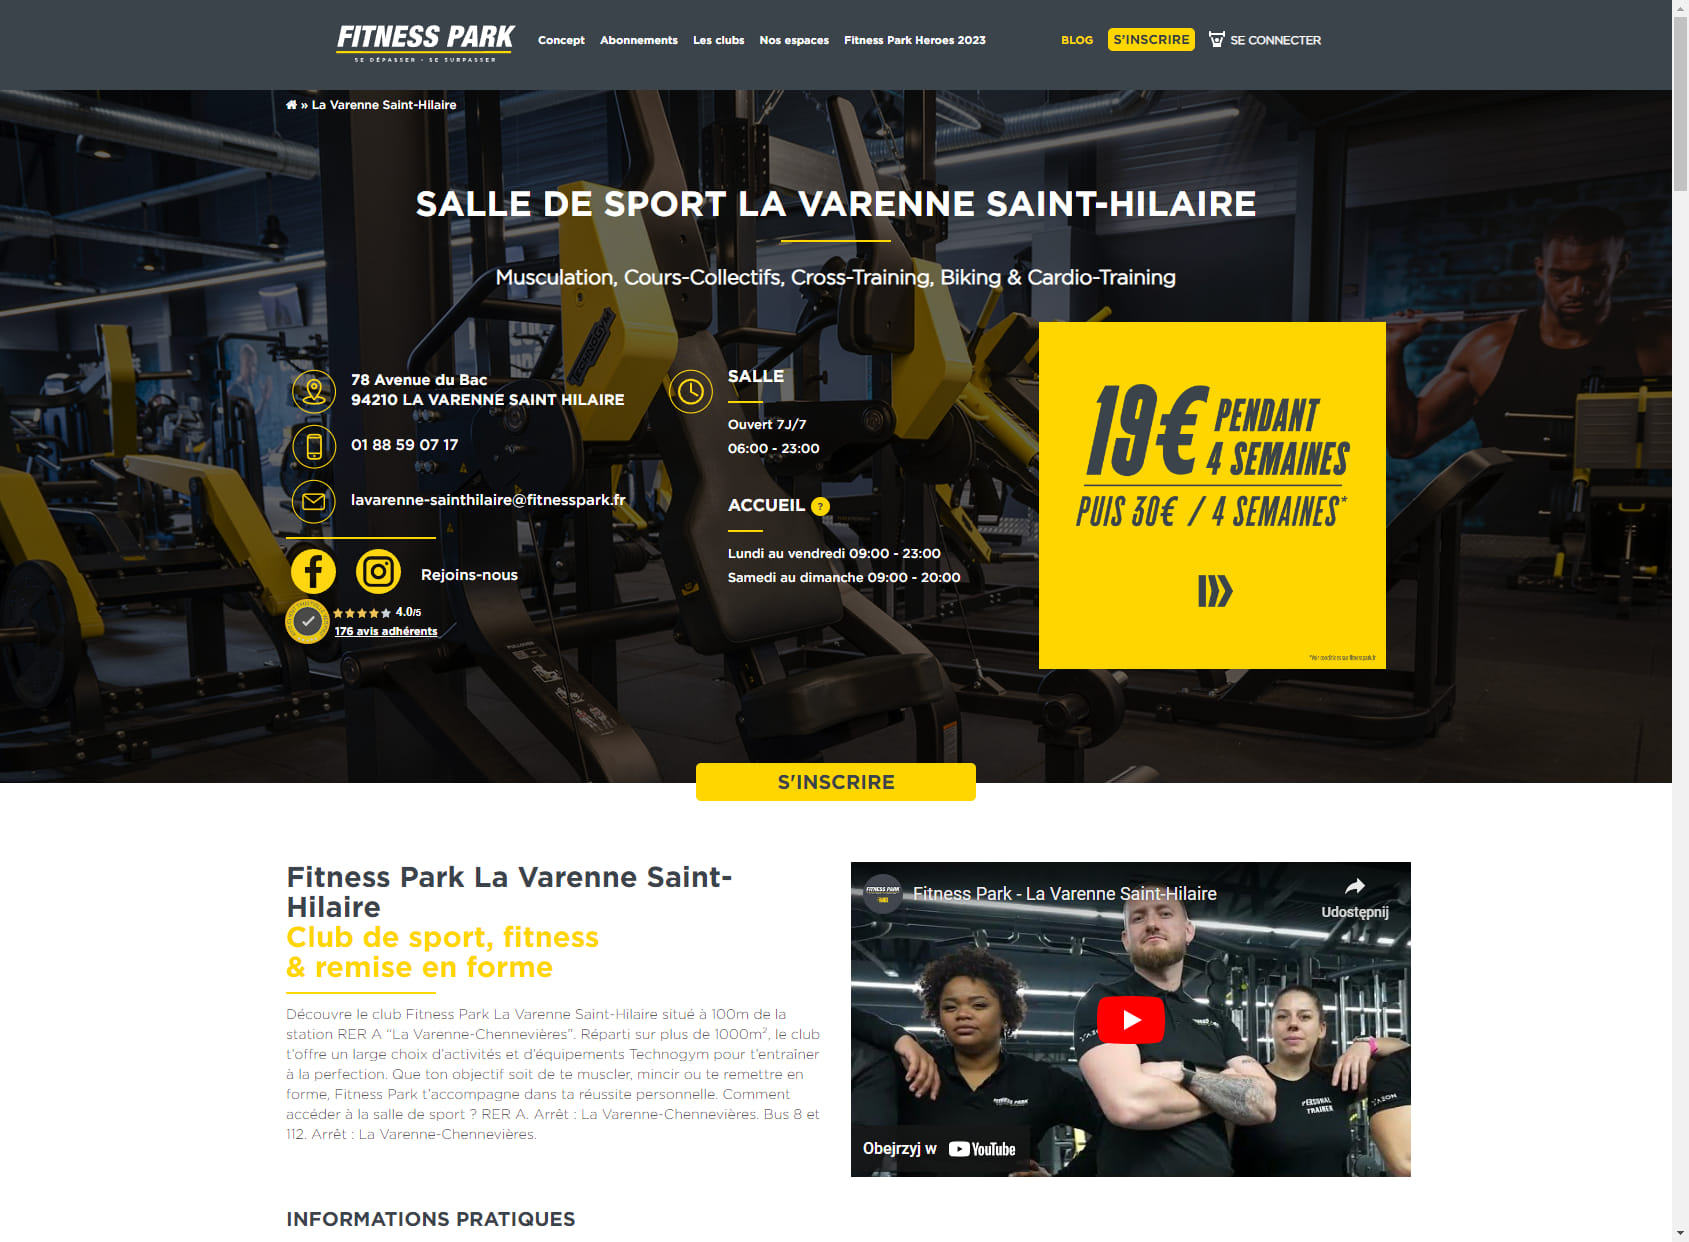 Salle de sport La Varenne Saint-Hilaire - Fitness Park